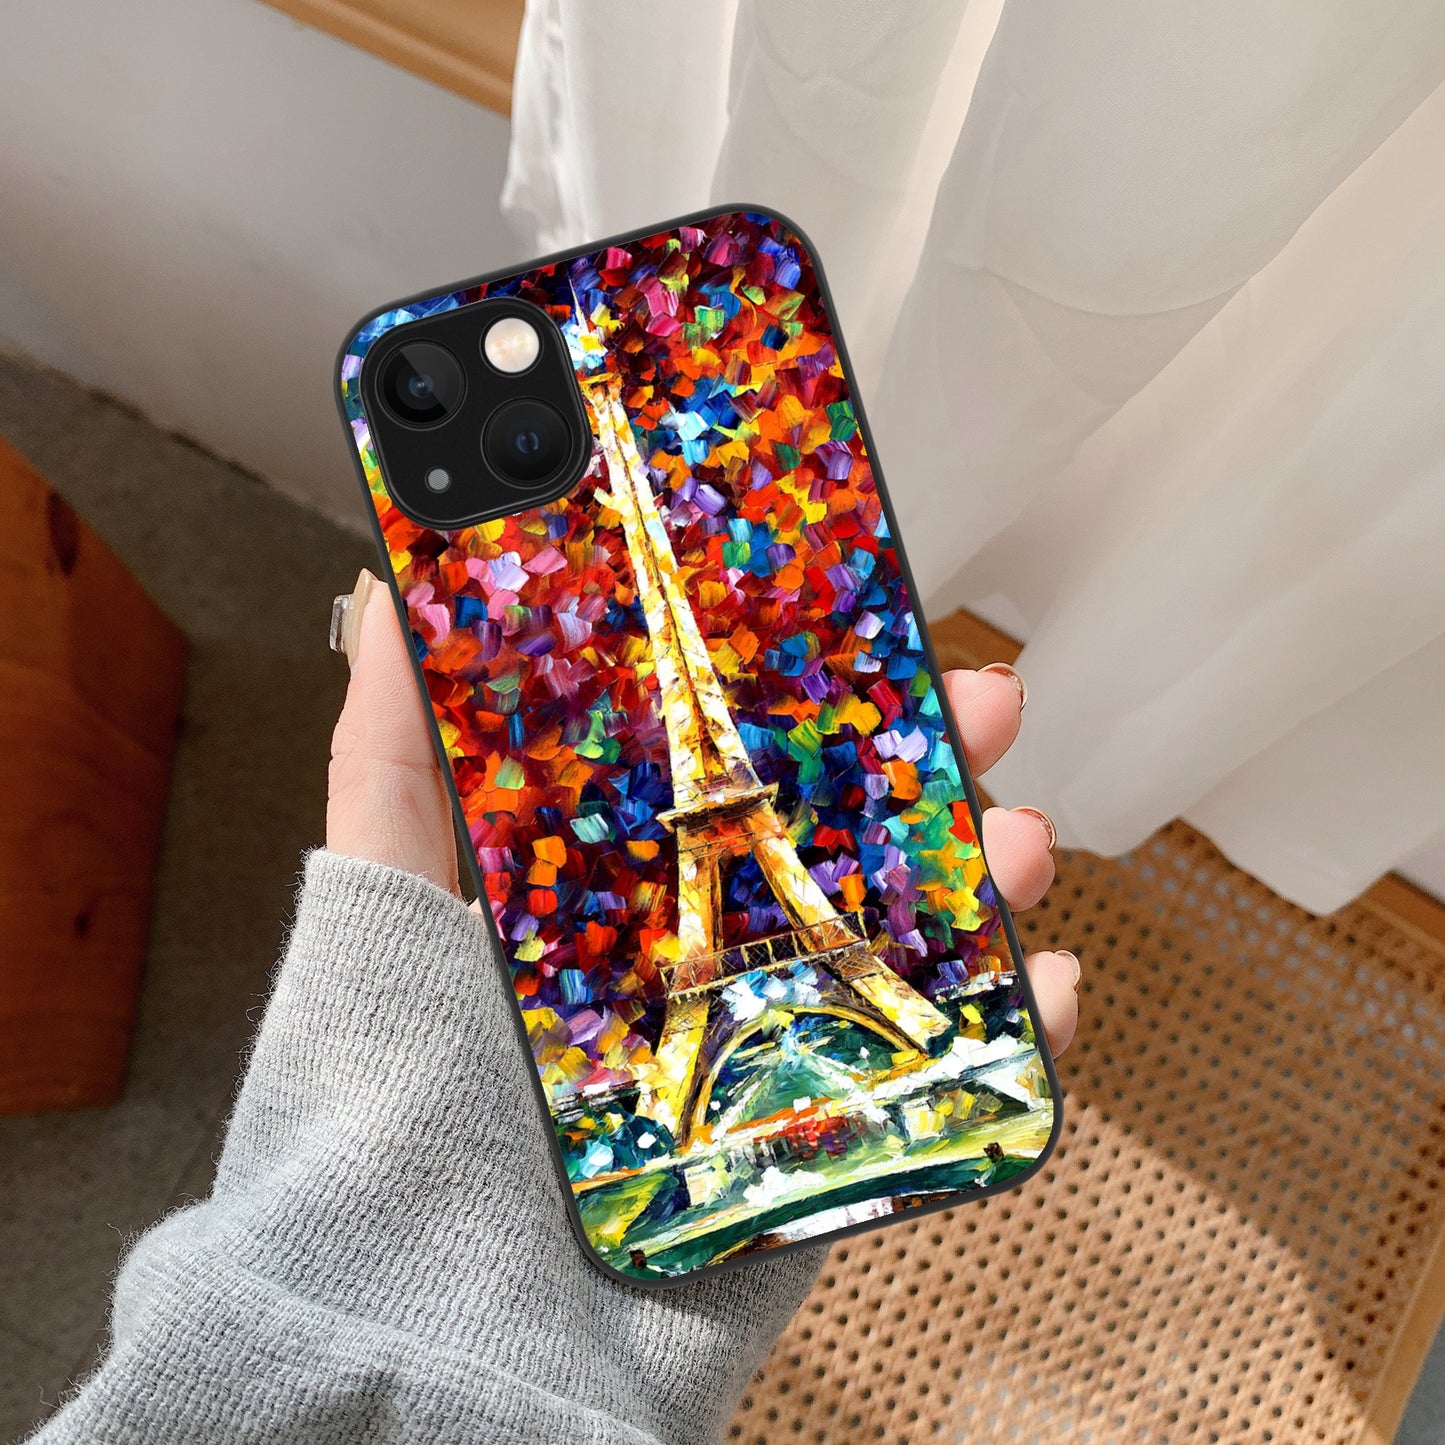 iPhone13 Series Phone Cases Afremov PARIS OF MY DREAM